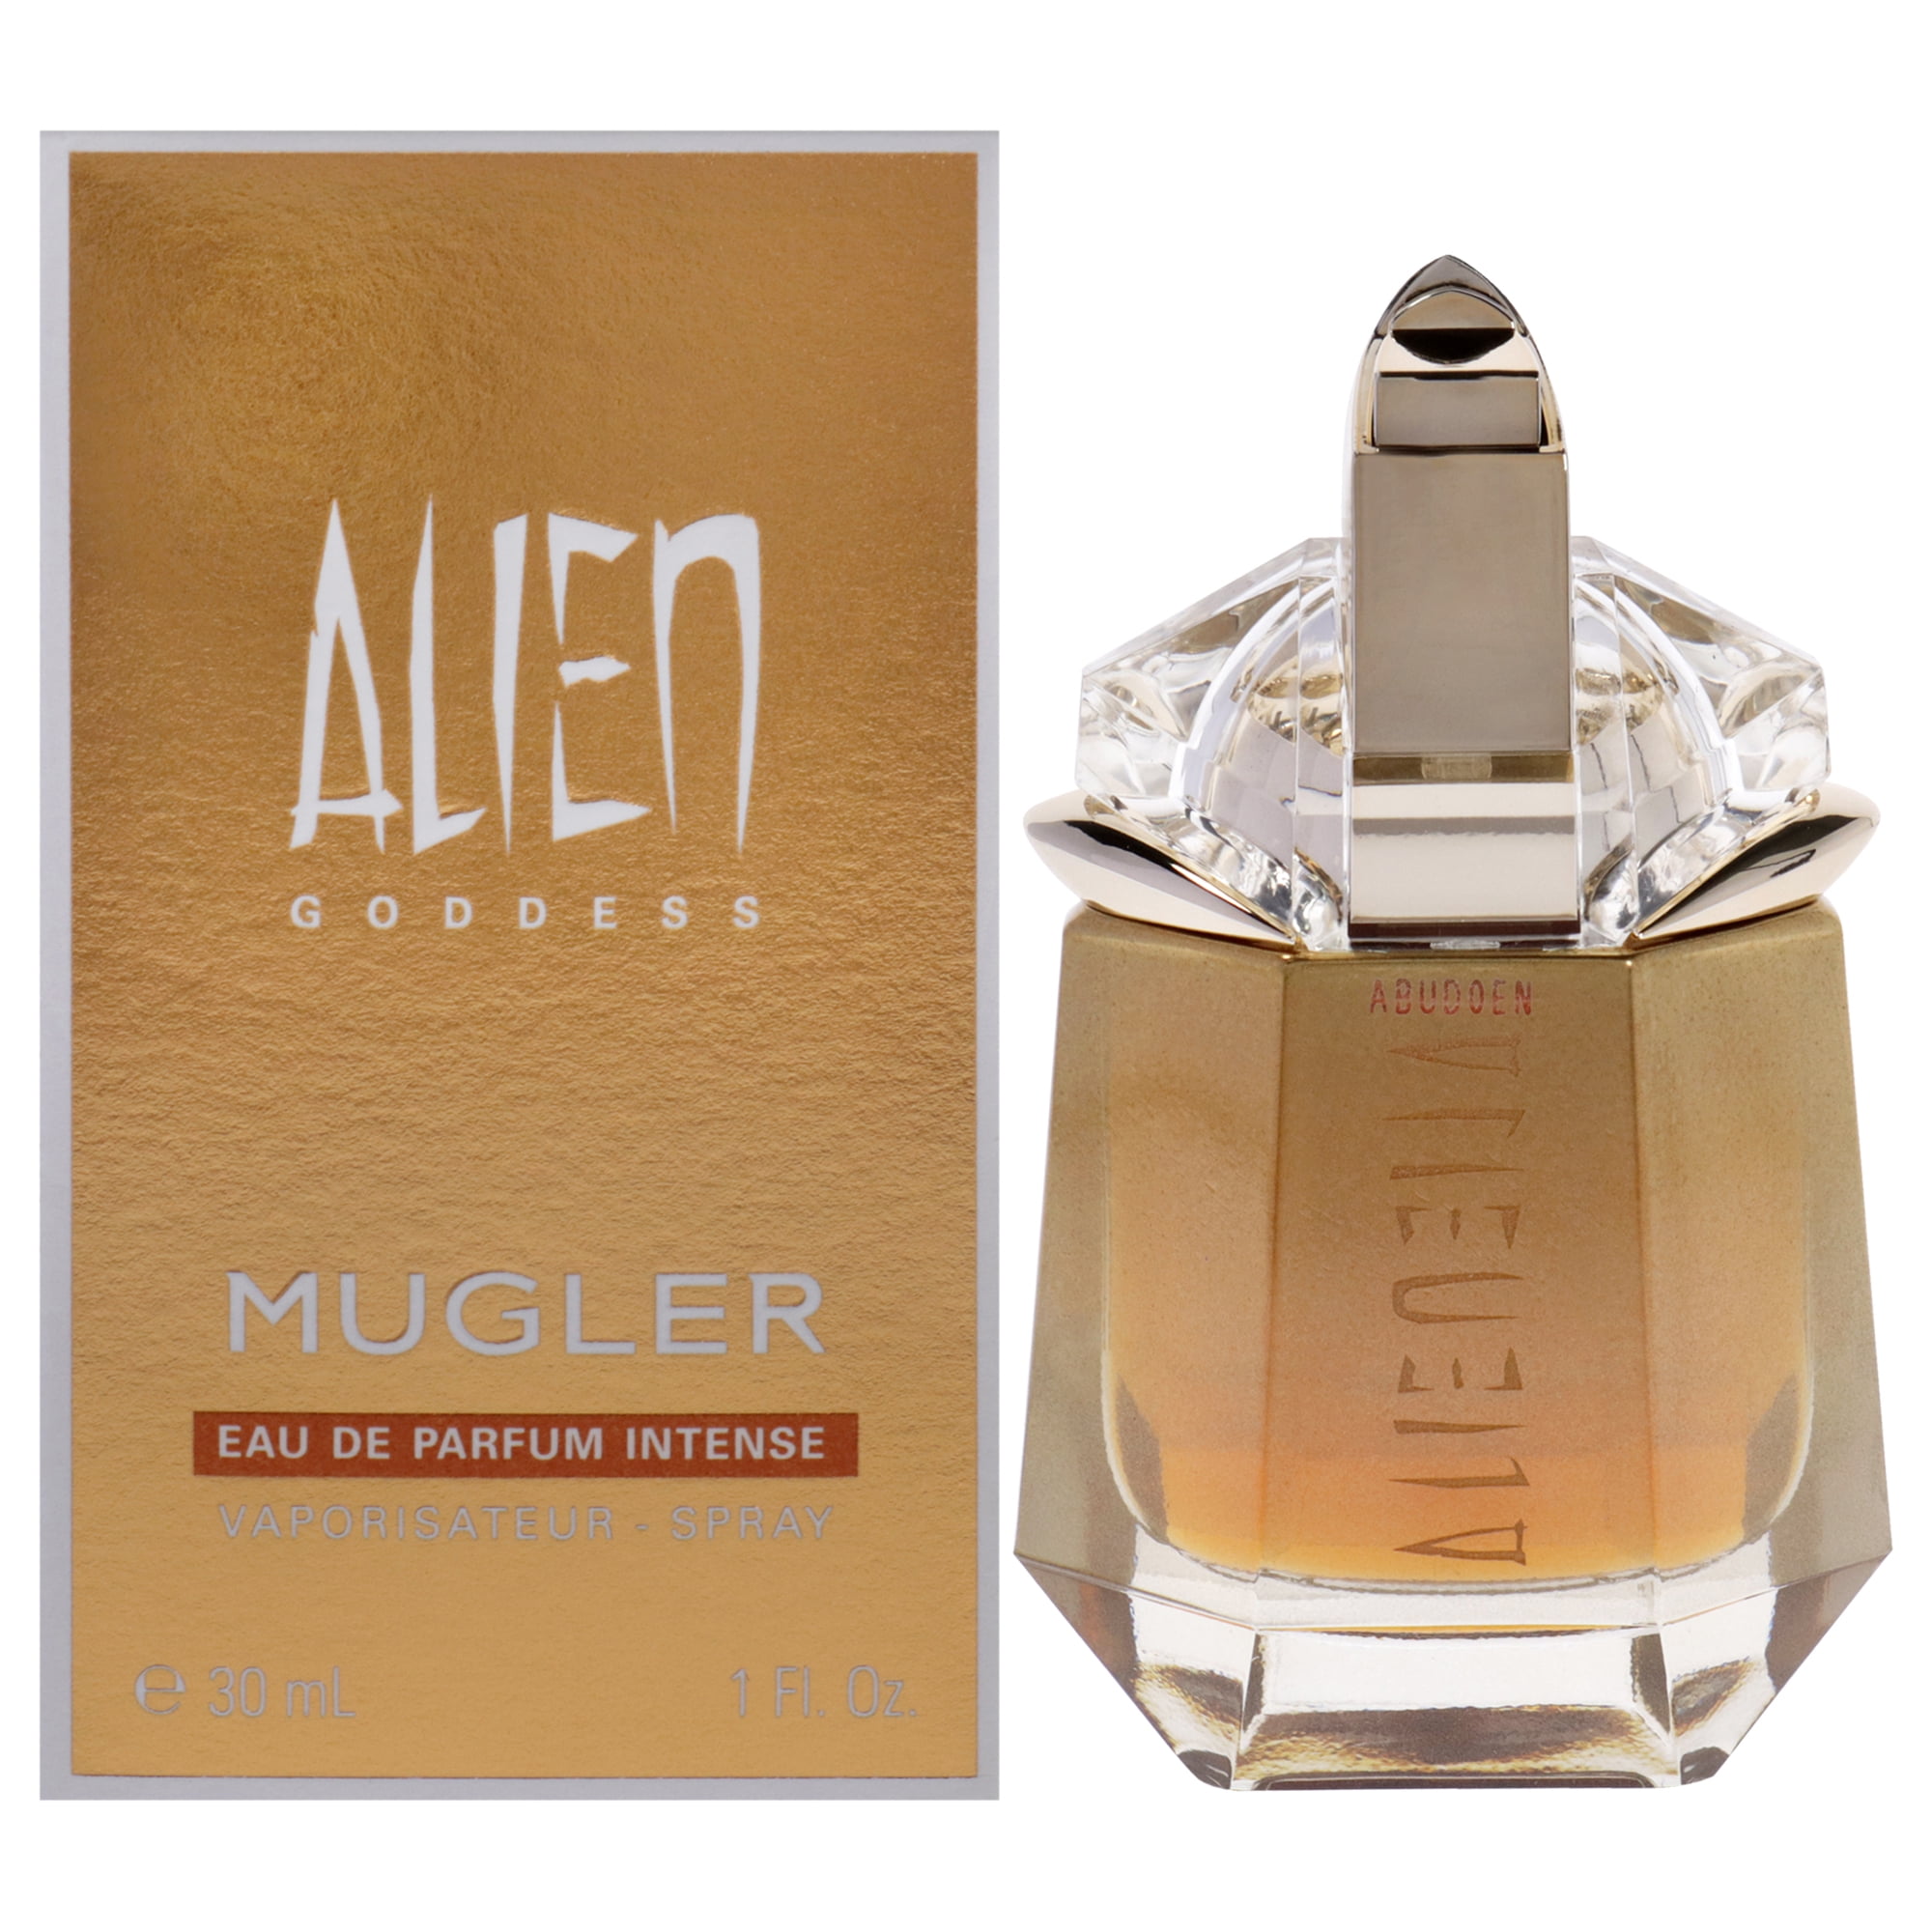 Mugler Alien Goddess Eau de Parfum (Nachfüller)